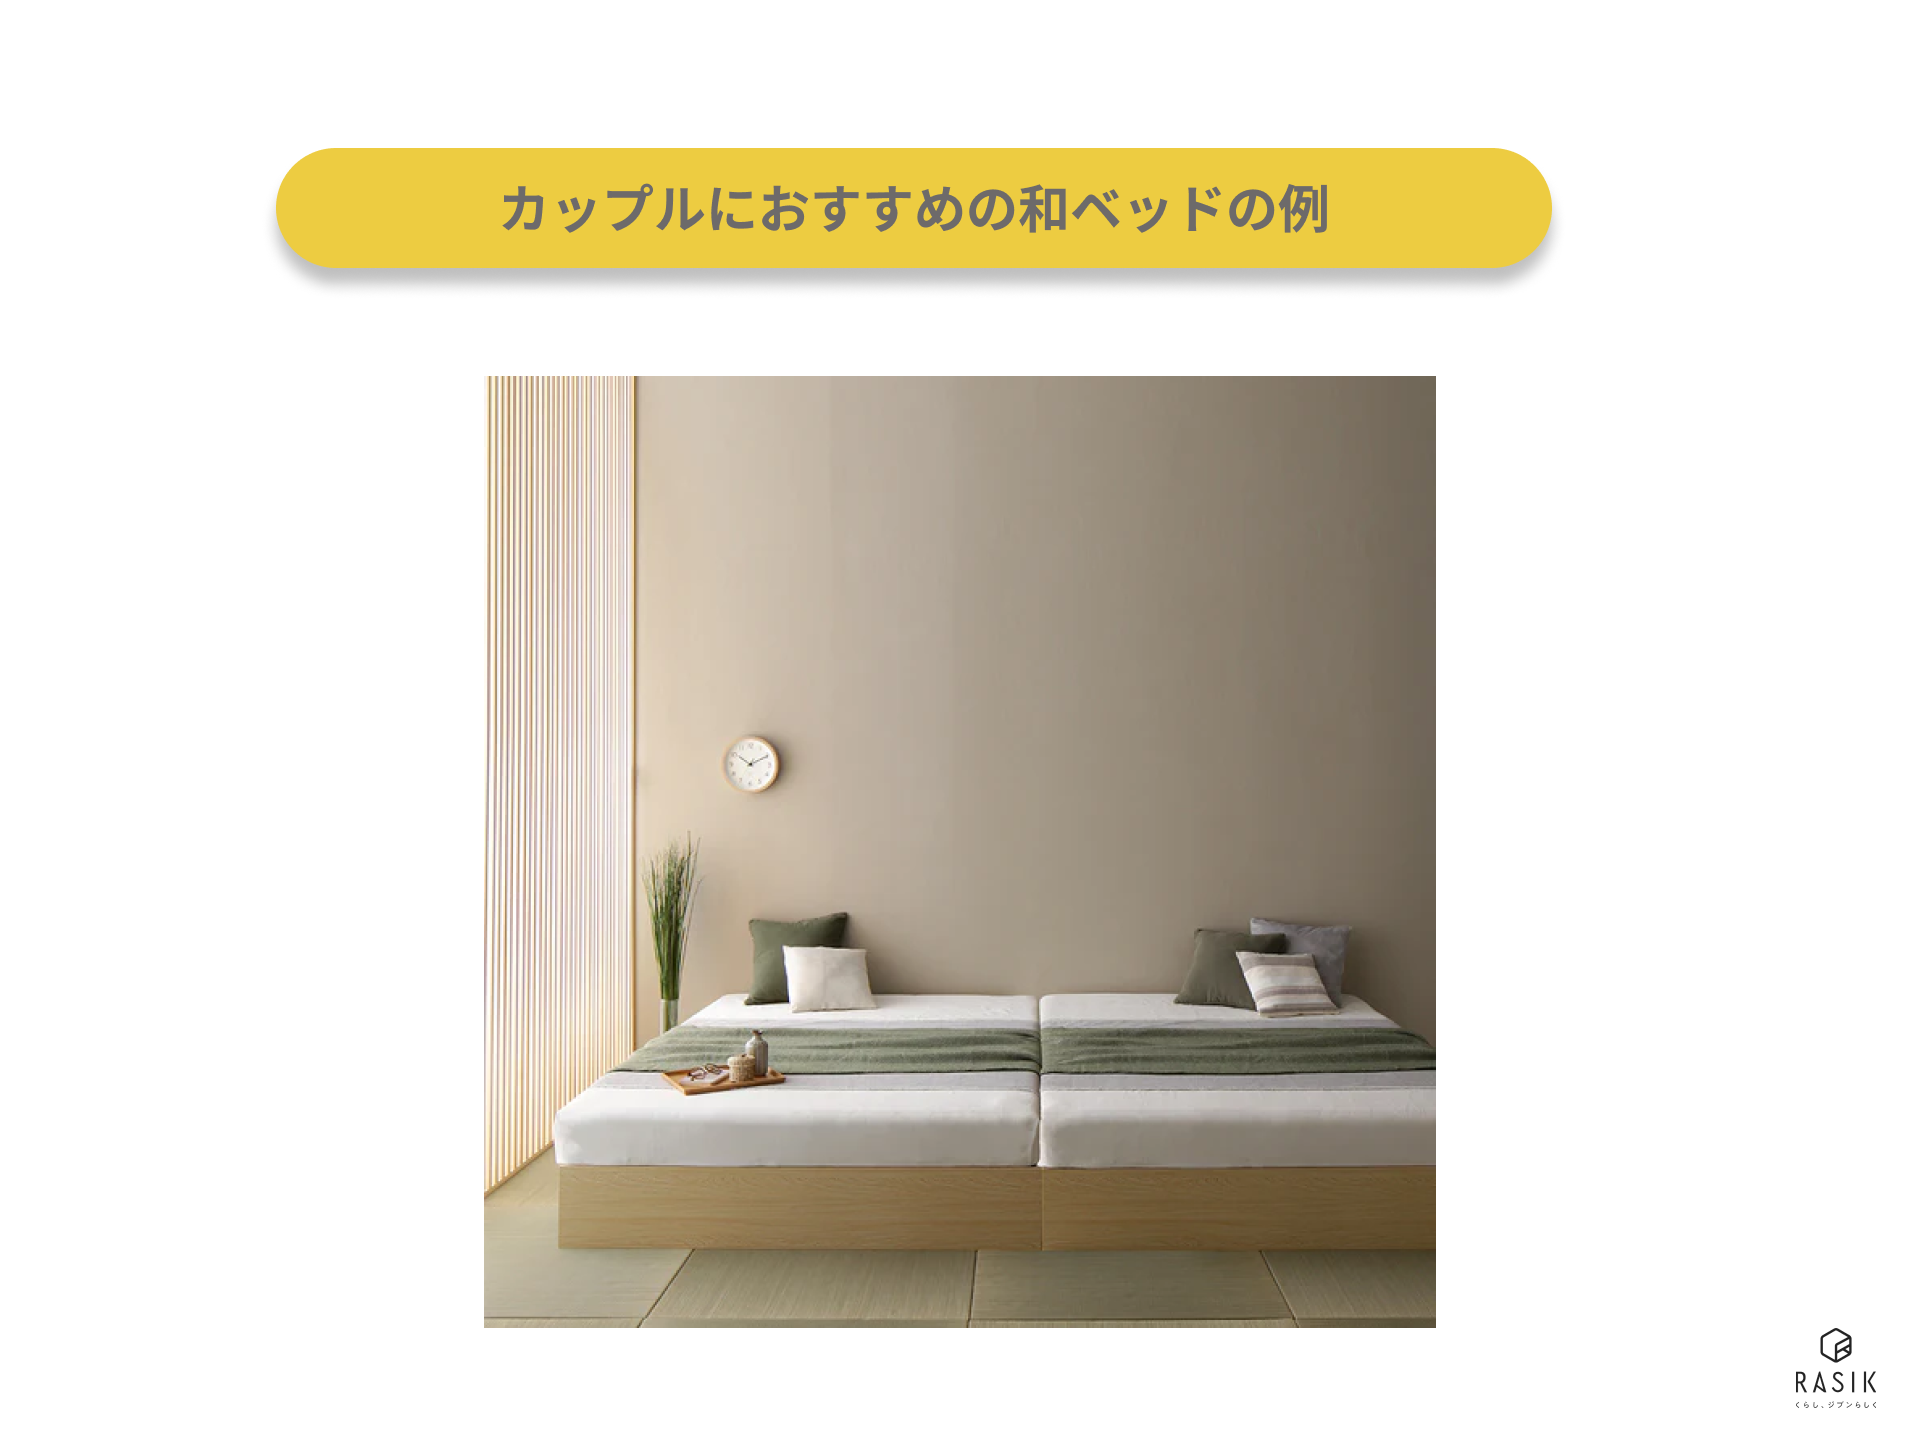 カップルにおすすめの和ベッドの例